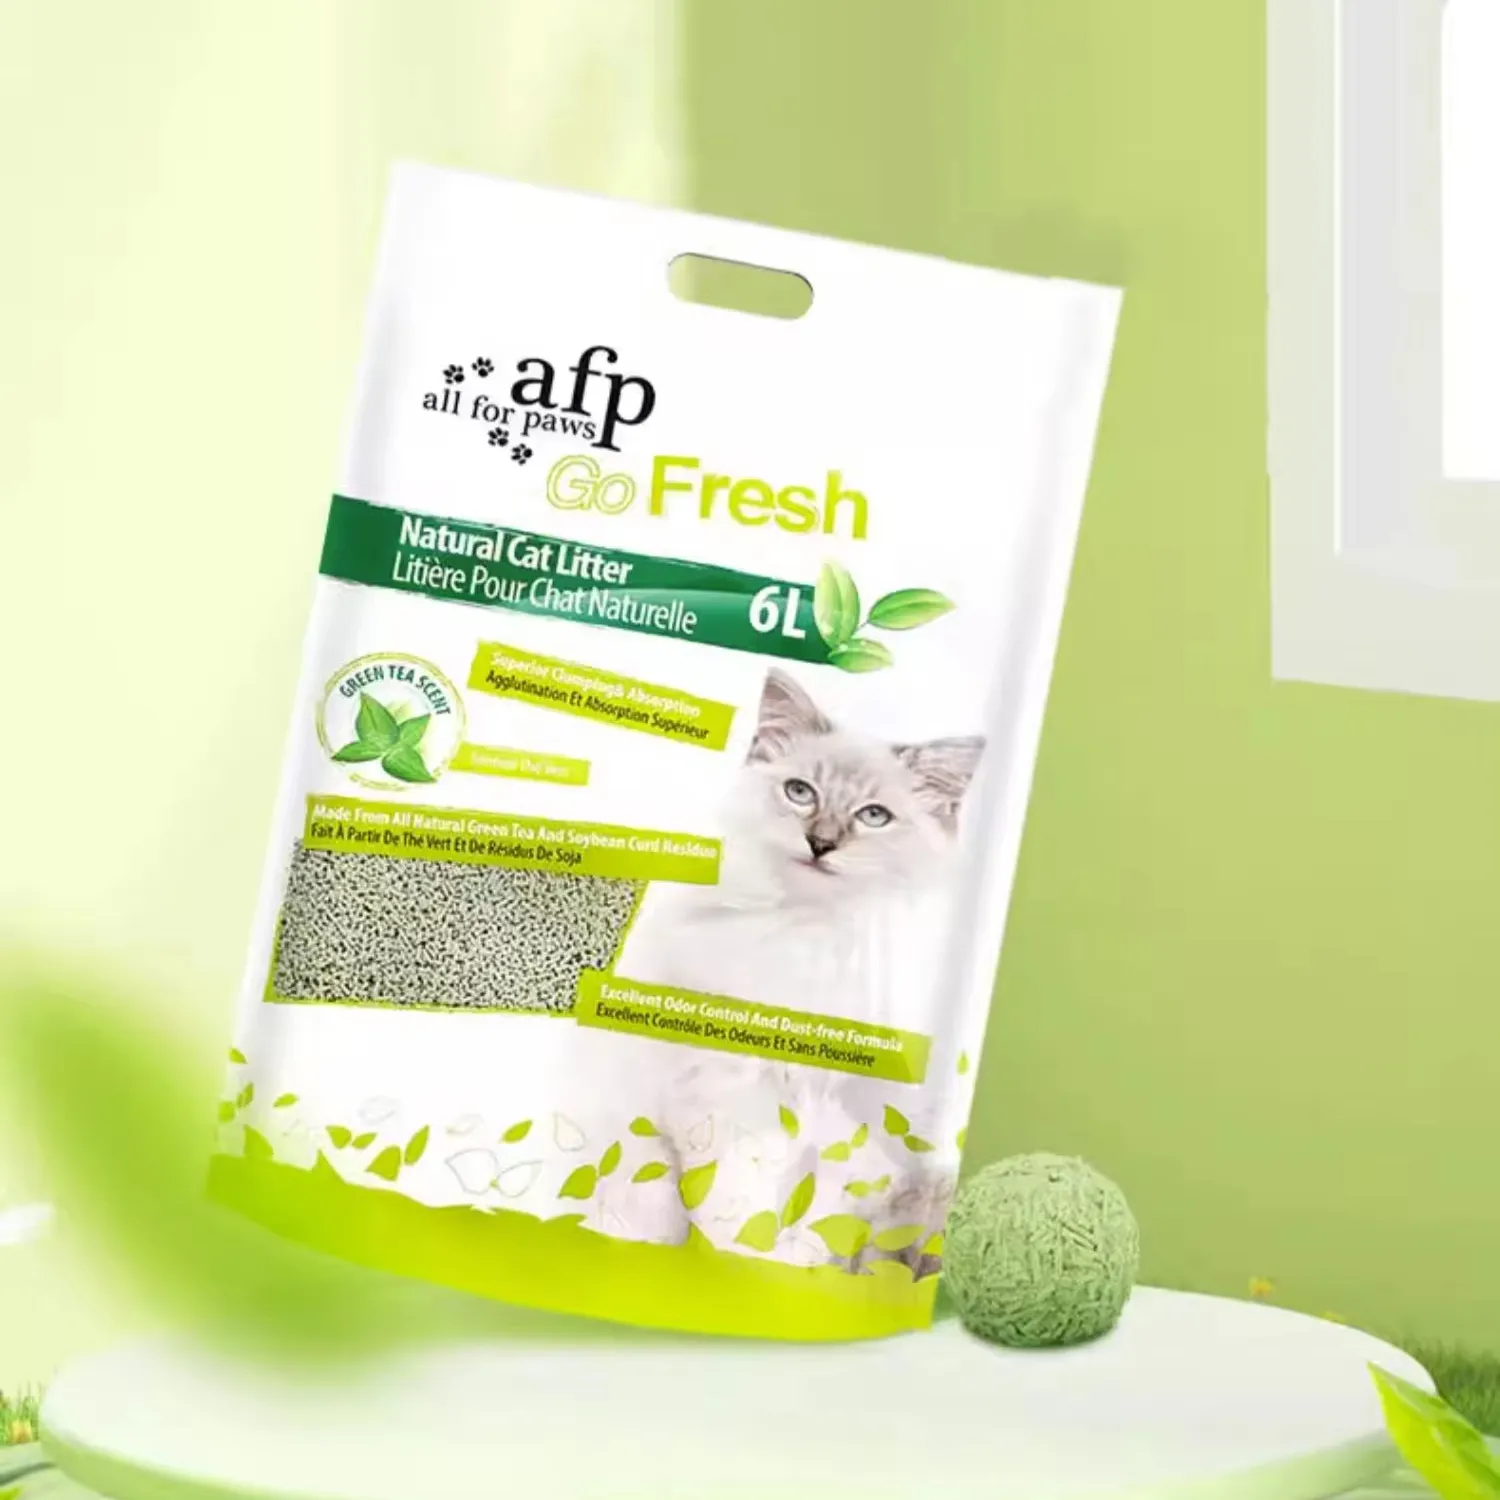 AFP Super assorbimento di granturco naturale di soia lettiera per gatti 3kg/6L a bassa polvere odore eccellente profumo di tè verde lettiera naturale per gatti